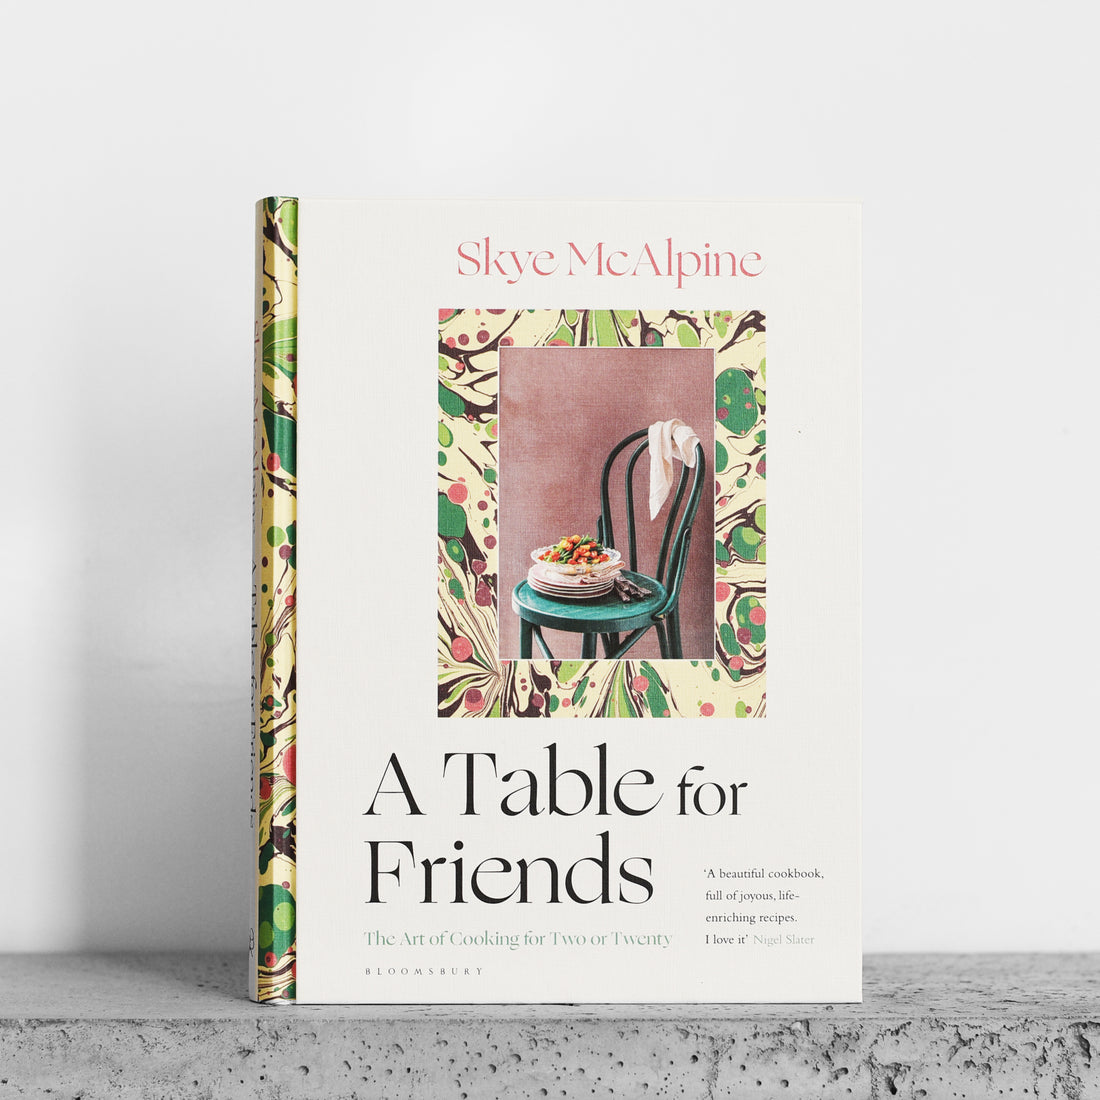 Stół dla przyjaciół: sztuka gotowania dla dwojga lub dwudziestu osób - Skye McAlpine